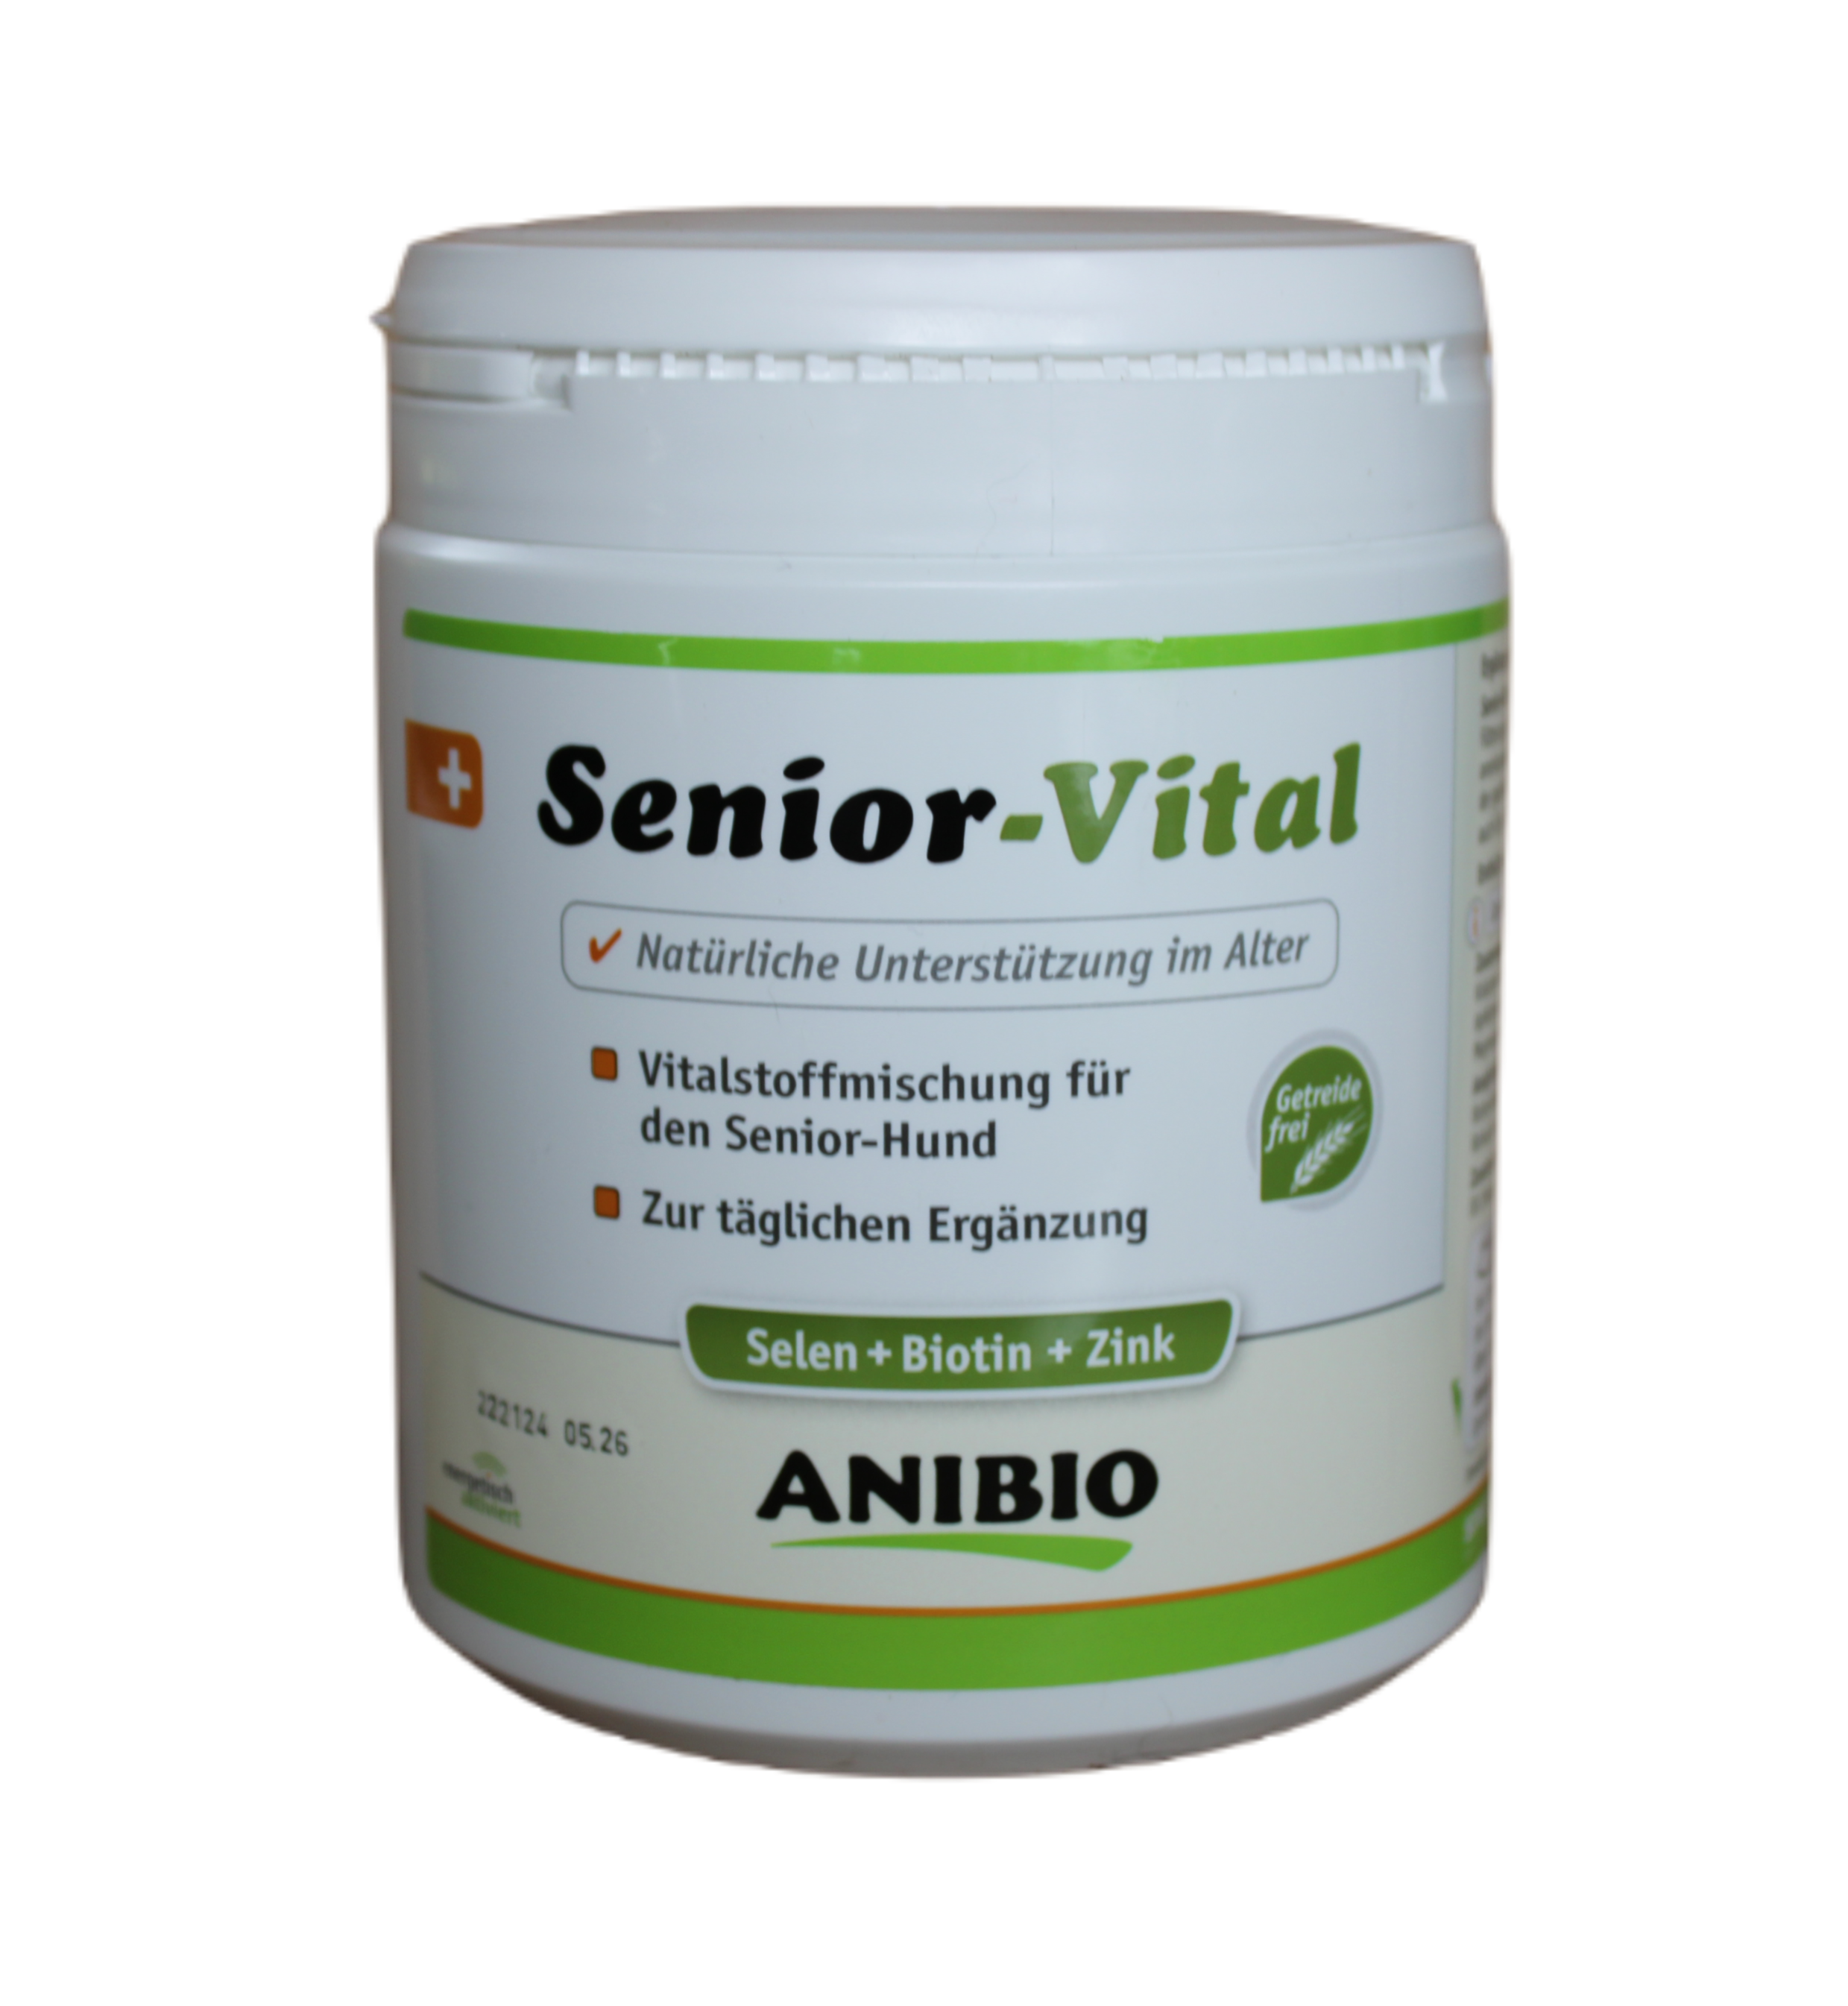 Anibio Senior-Vital 450g - Unterstützung im Alter